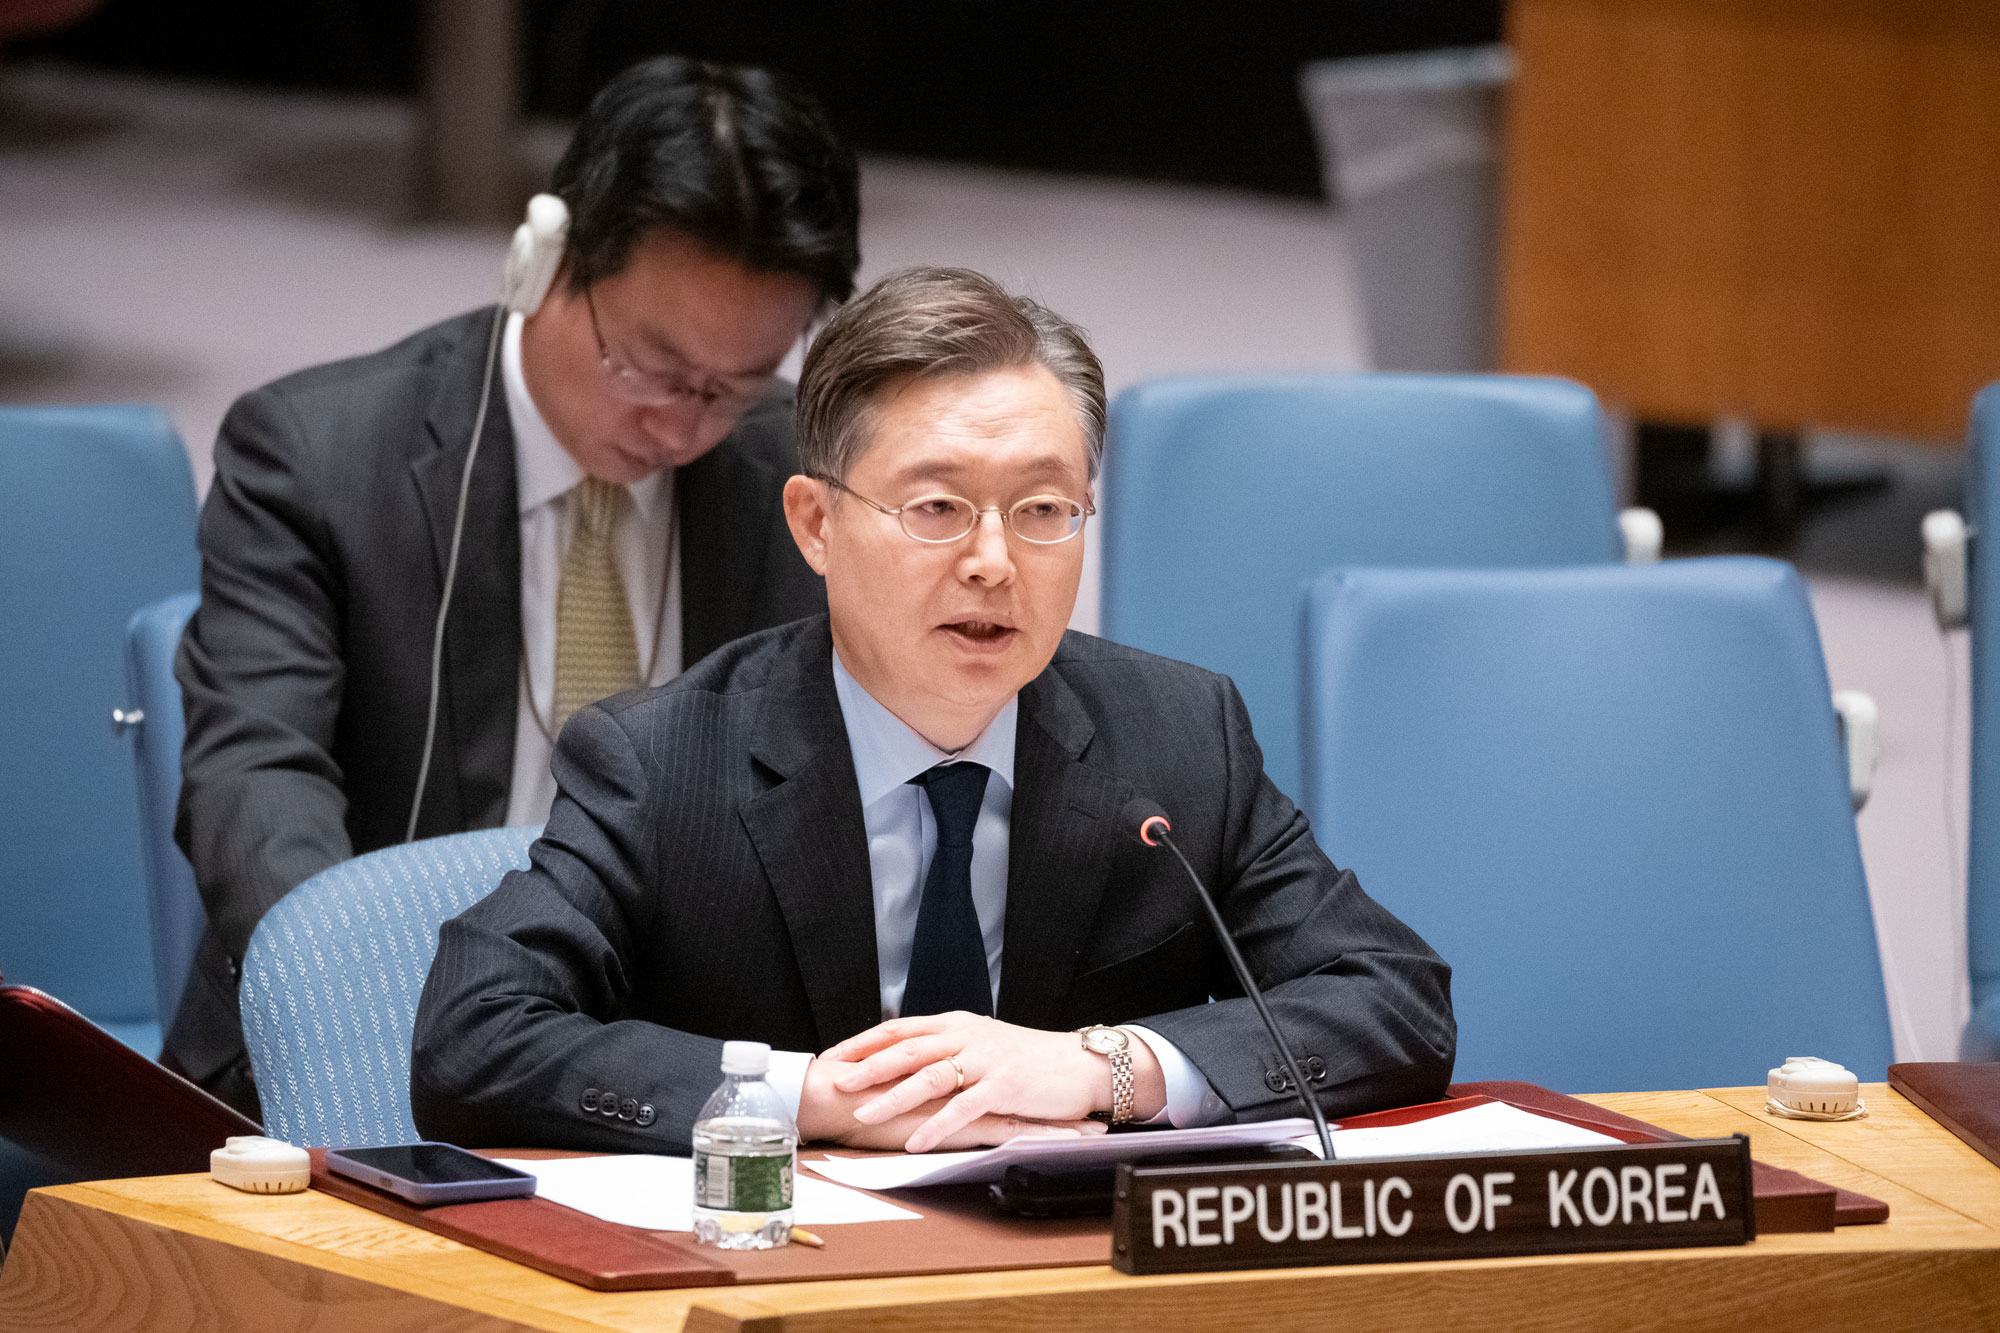 من الأرشيف: سفير جمهورية كوريا، جونكوك هوانغ، يلقي كلمة خلال اجتماع مجلس الأمن